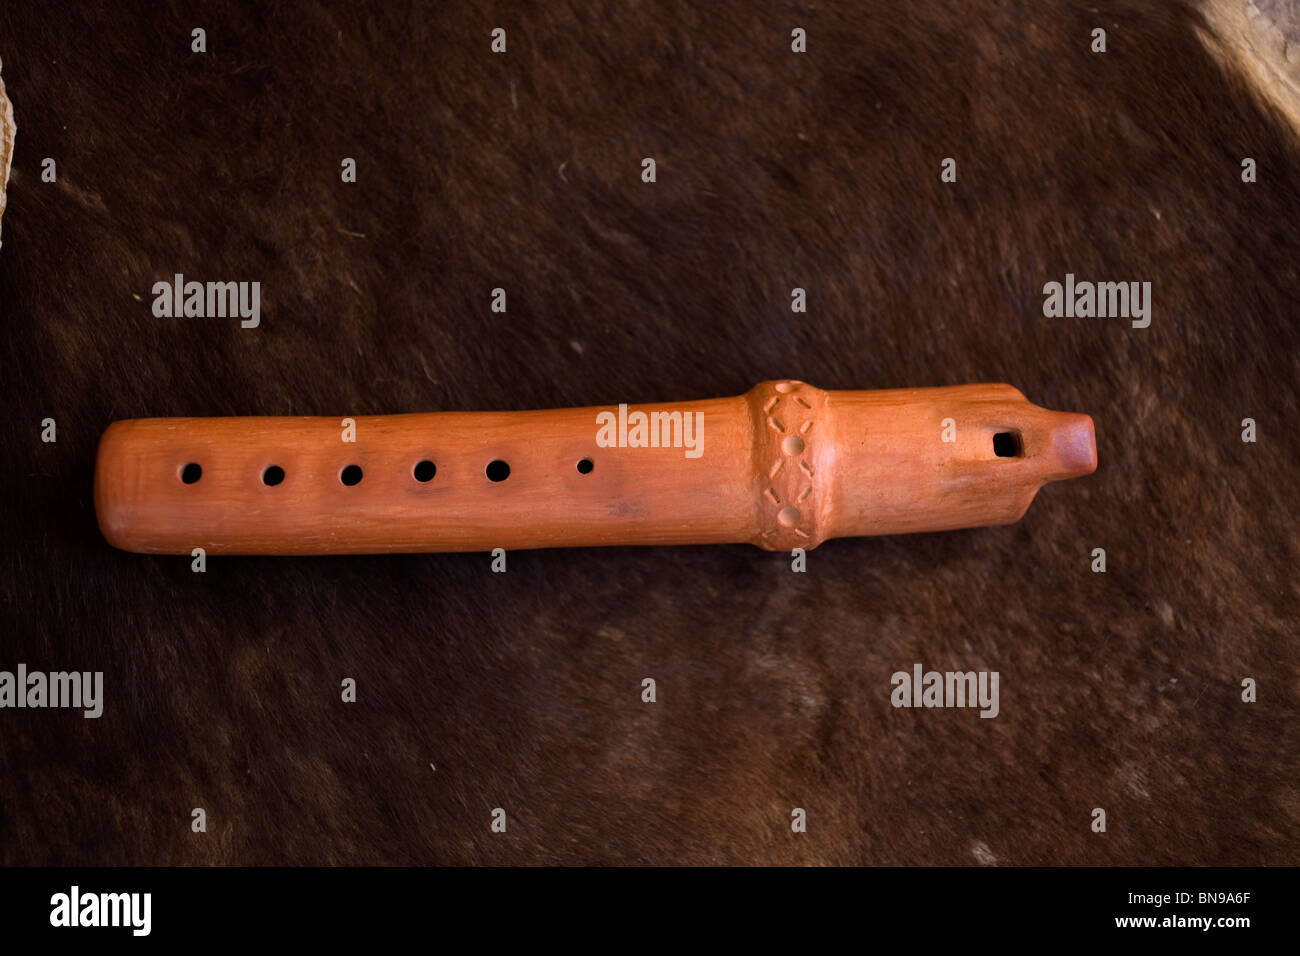 A Mayan flute, a Mesoamerican Pre-Hispanic musical instrument, in Mineral de Pozos, Nuevo Leon State, Mexico, November 27, 2008. Stock Photo